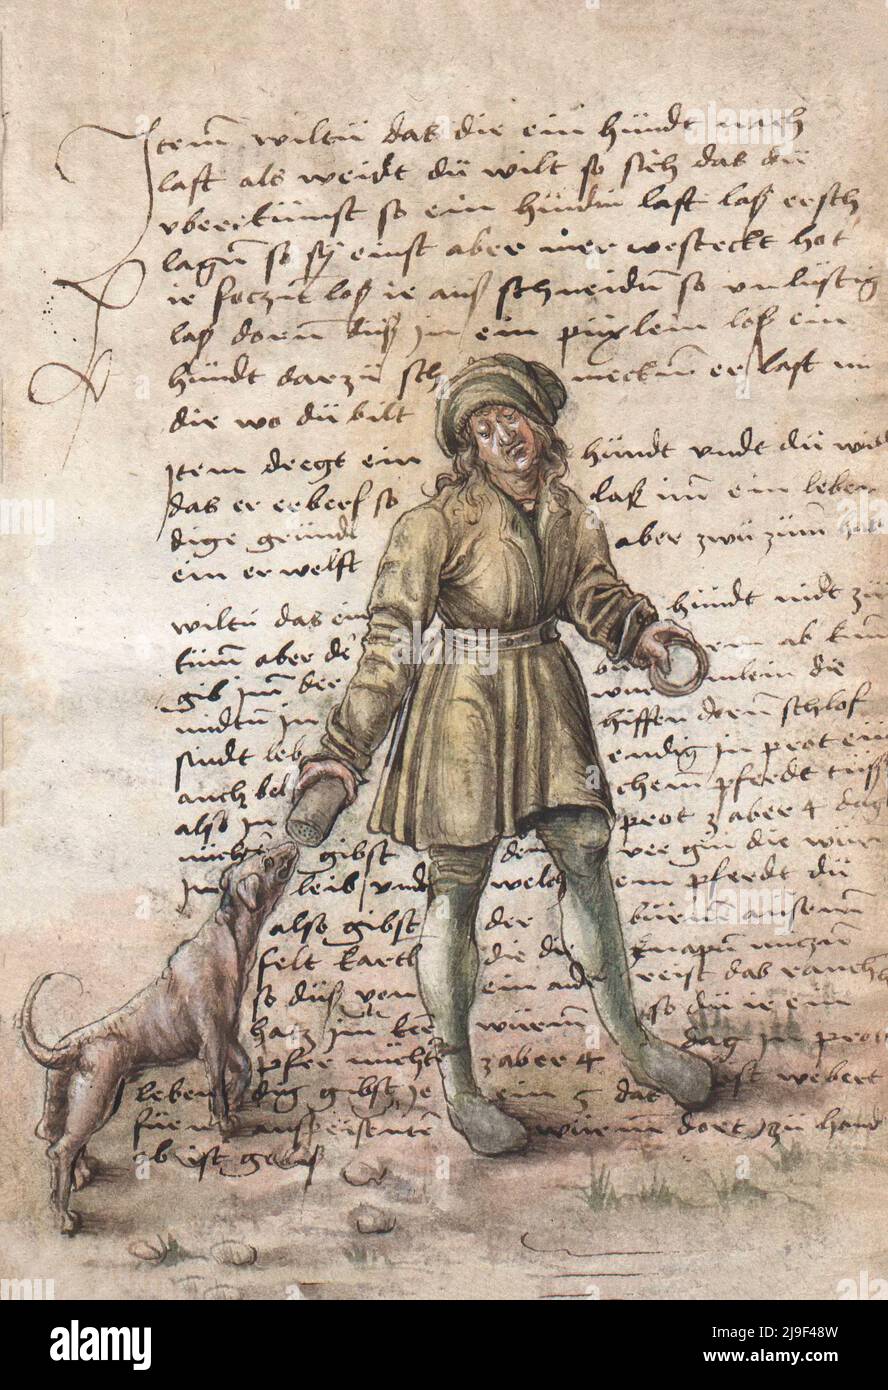 Mittelalterliche Illustration des Hundetrainings. Die Werkzeuge von Martin Löffelholz (1505) Löffelholtz Codex. Illustrationen und Beschreibungen aller Art von Hand zu Stockfoto